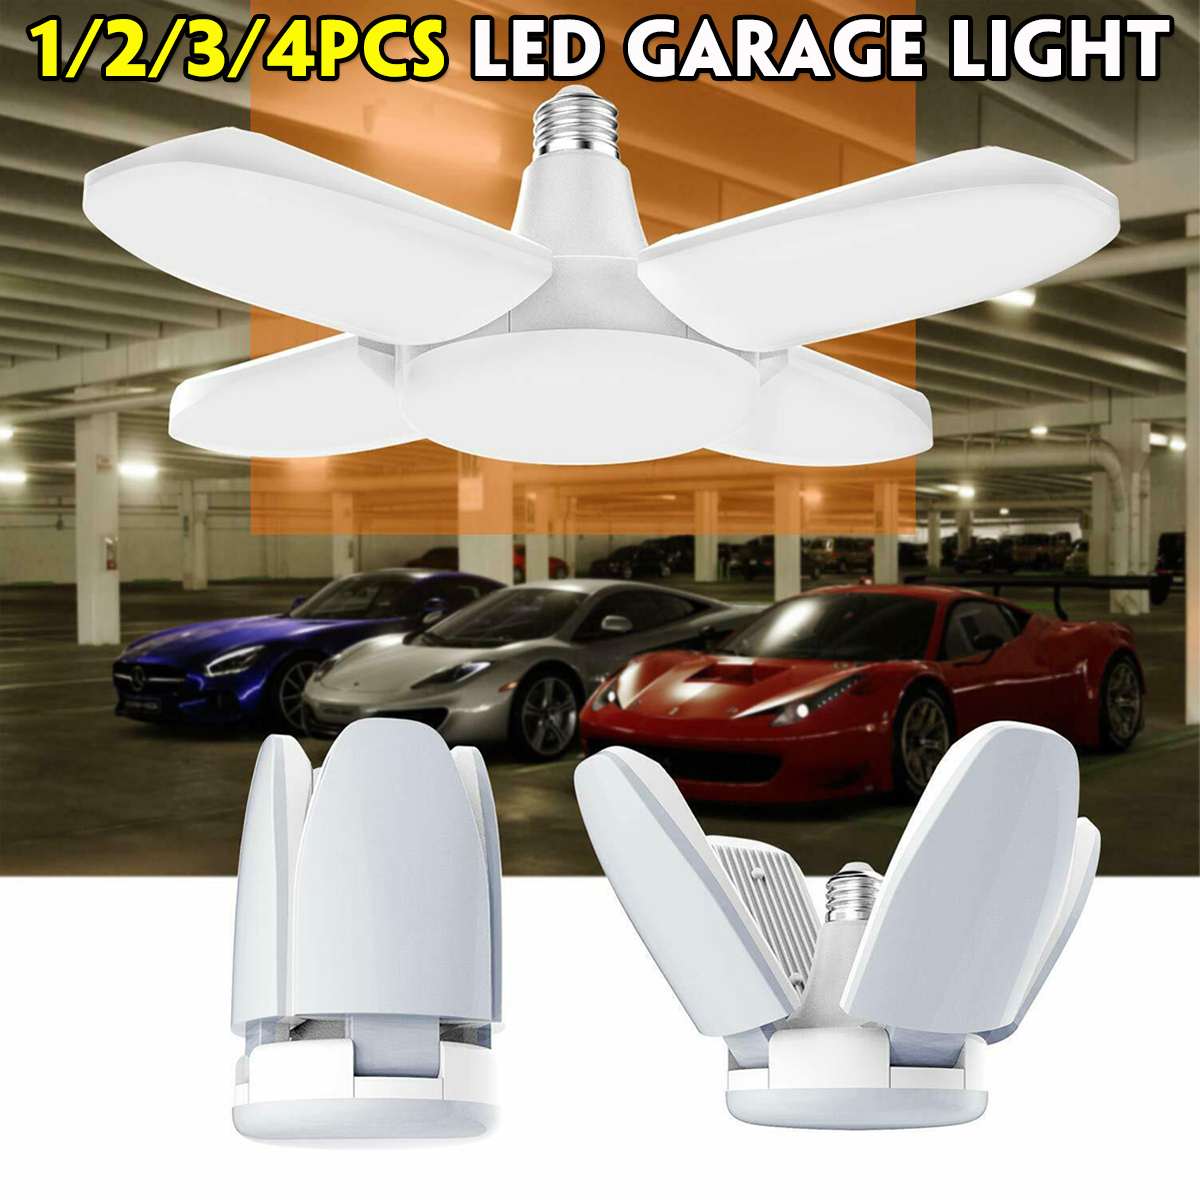 156 stk 60w 5600lm led deformerbar garagelampe  e27 85-265v loftslamper til garage/loft/kælder/hjem led lampe